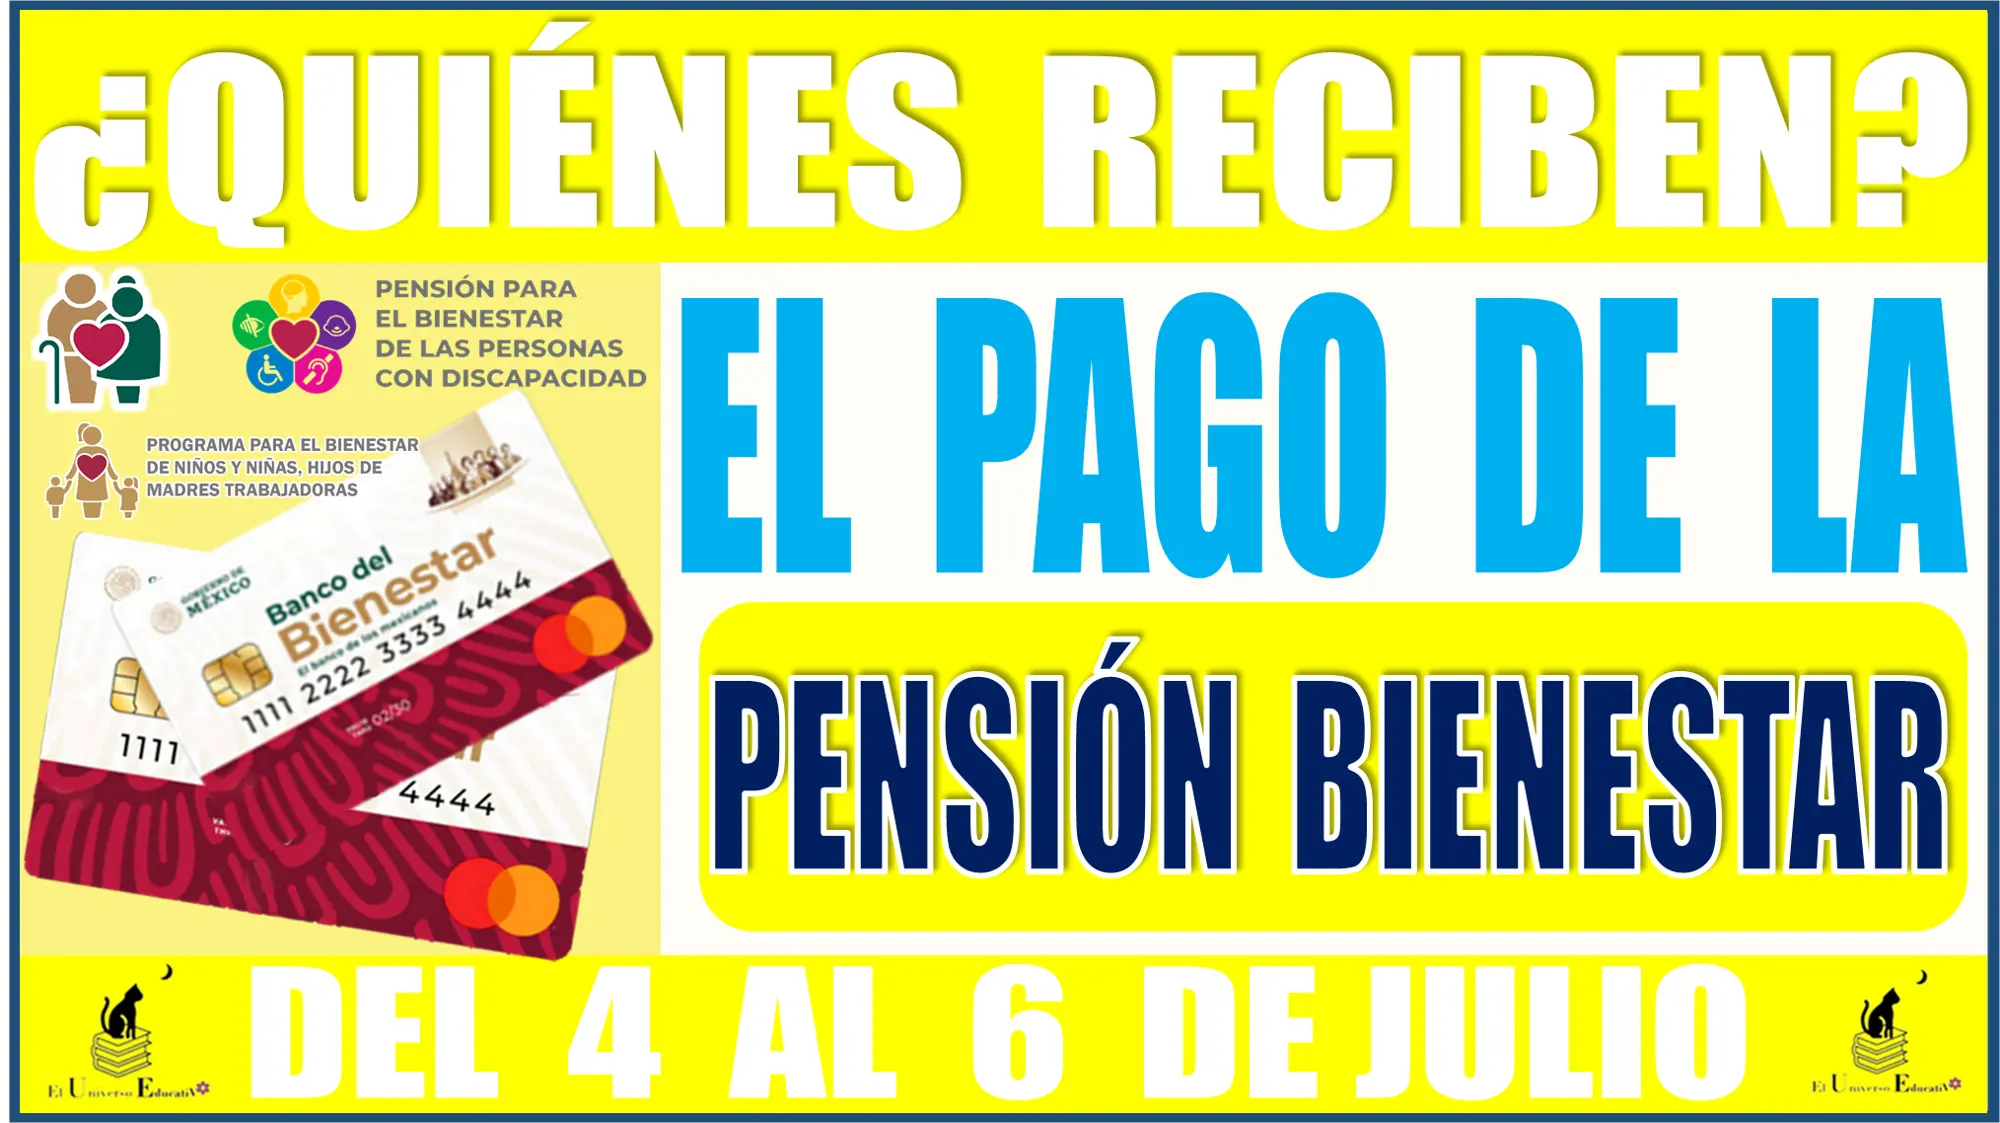 ¿Quiénes reciben el pago de la Pensión para el Bienestar del 4 al 06 de julio?